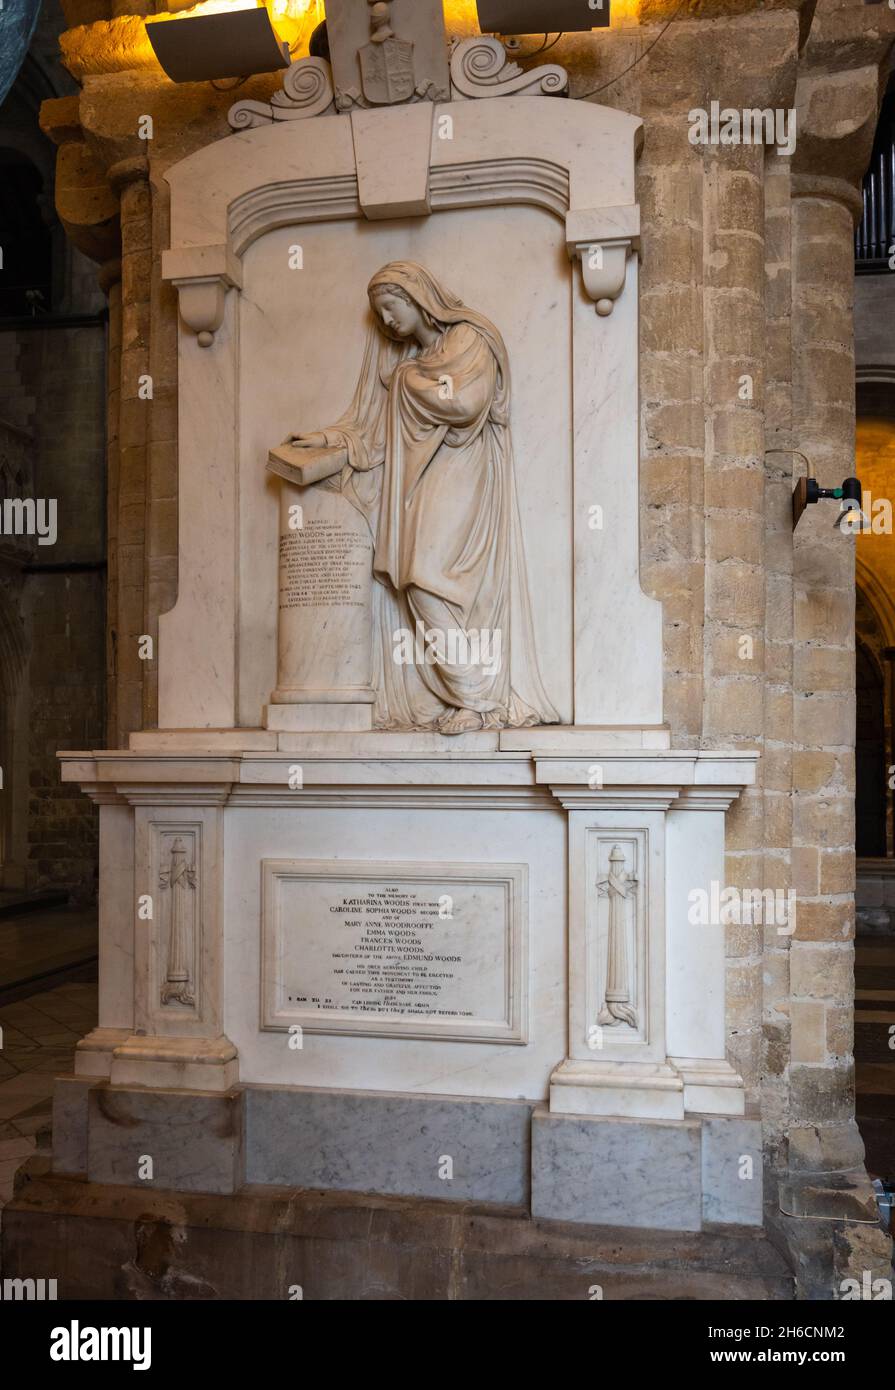 Memorial à Edmund Woods dans la cathédrale de Chichester dans la ville de Chichester, West Sussex, Royaume-Uni.Merci au doyen et au chapitre de la cathédrale de Chichester. Banque D'Images